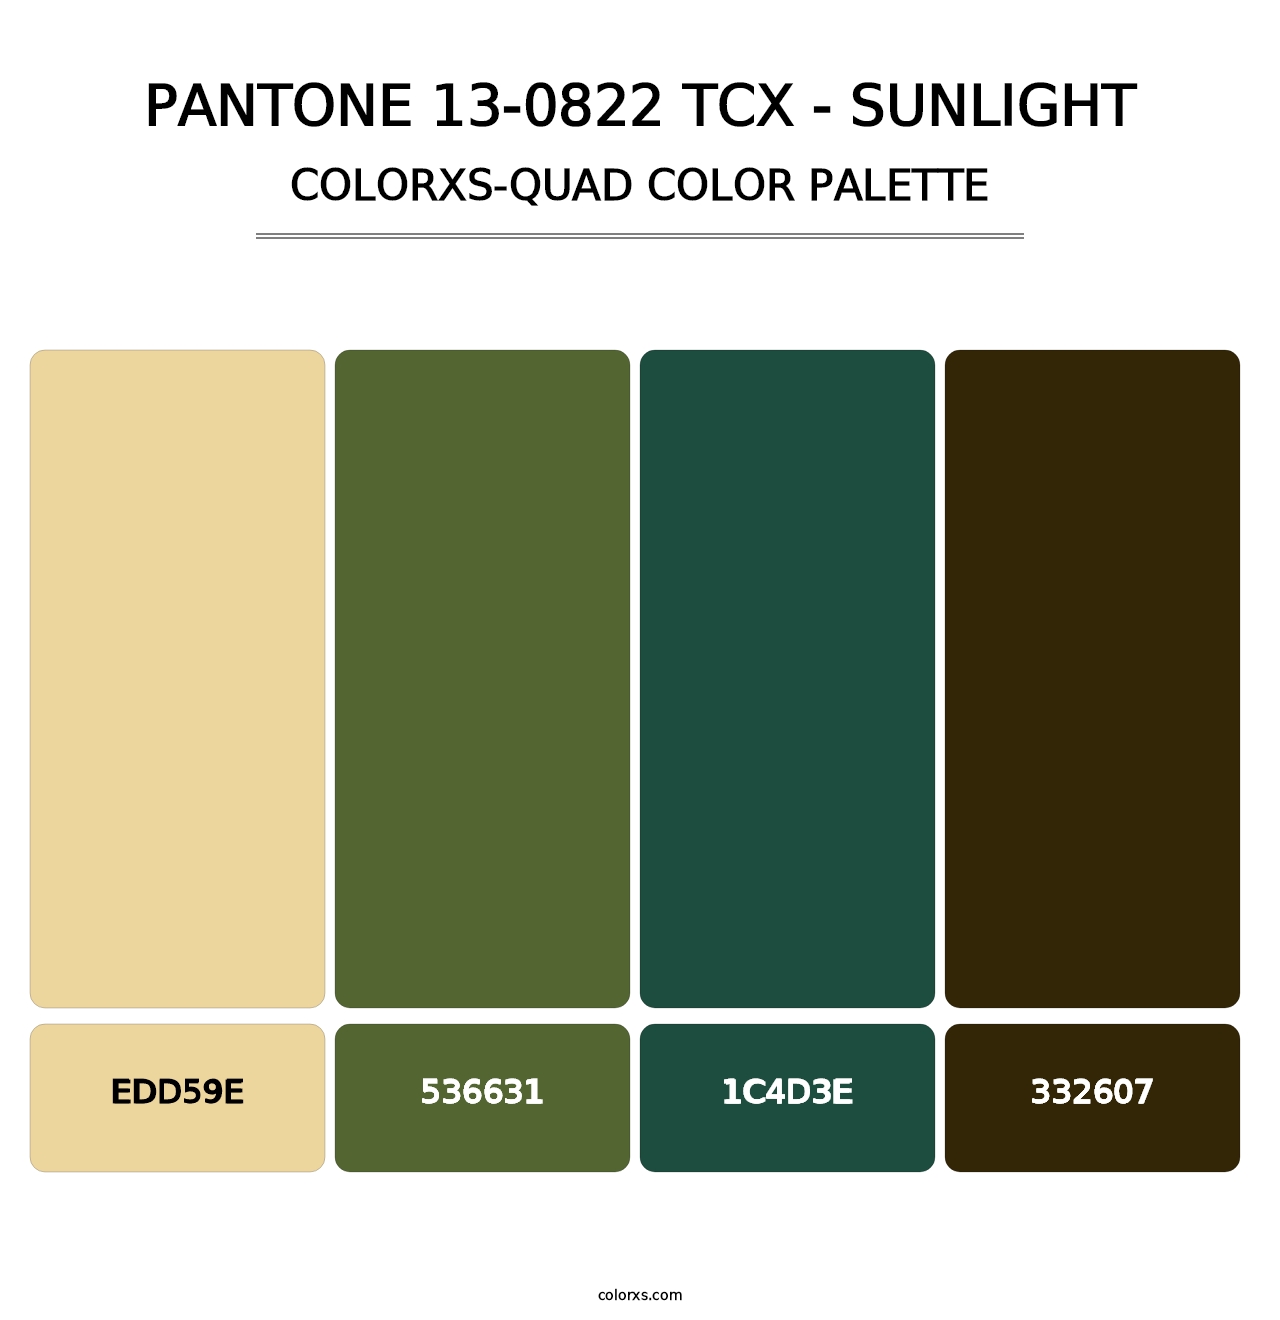 PANTONE 13-0822 TCX - Sunlight - Colorxs Quad Palette